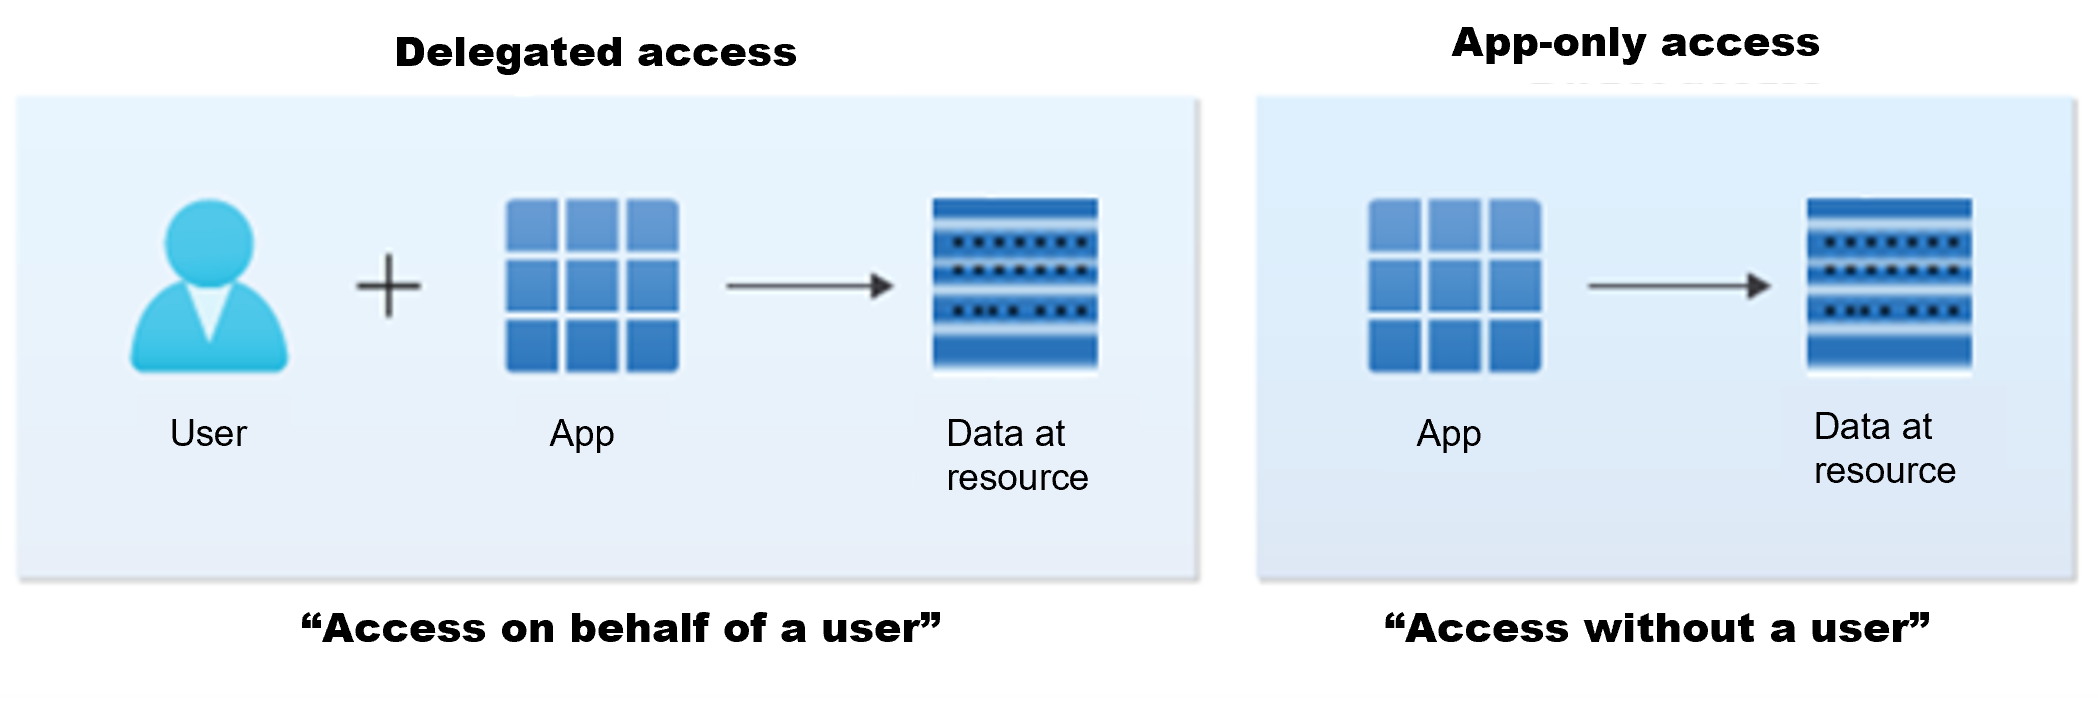 Abbildung der Szenarien für den delegierten und reinen App-Zugriff im Microsoft Identity Platform.